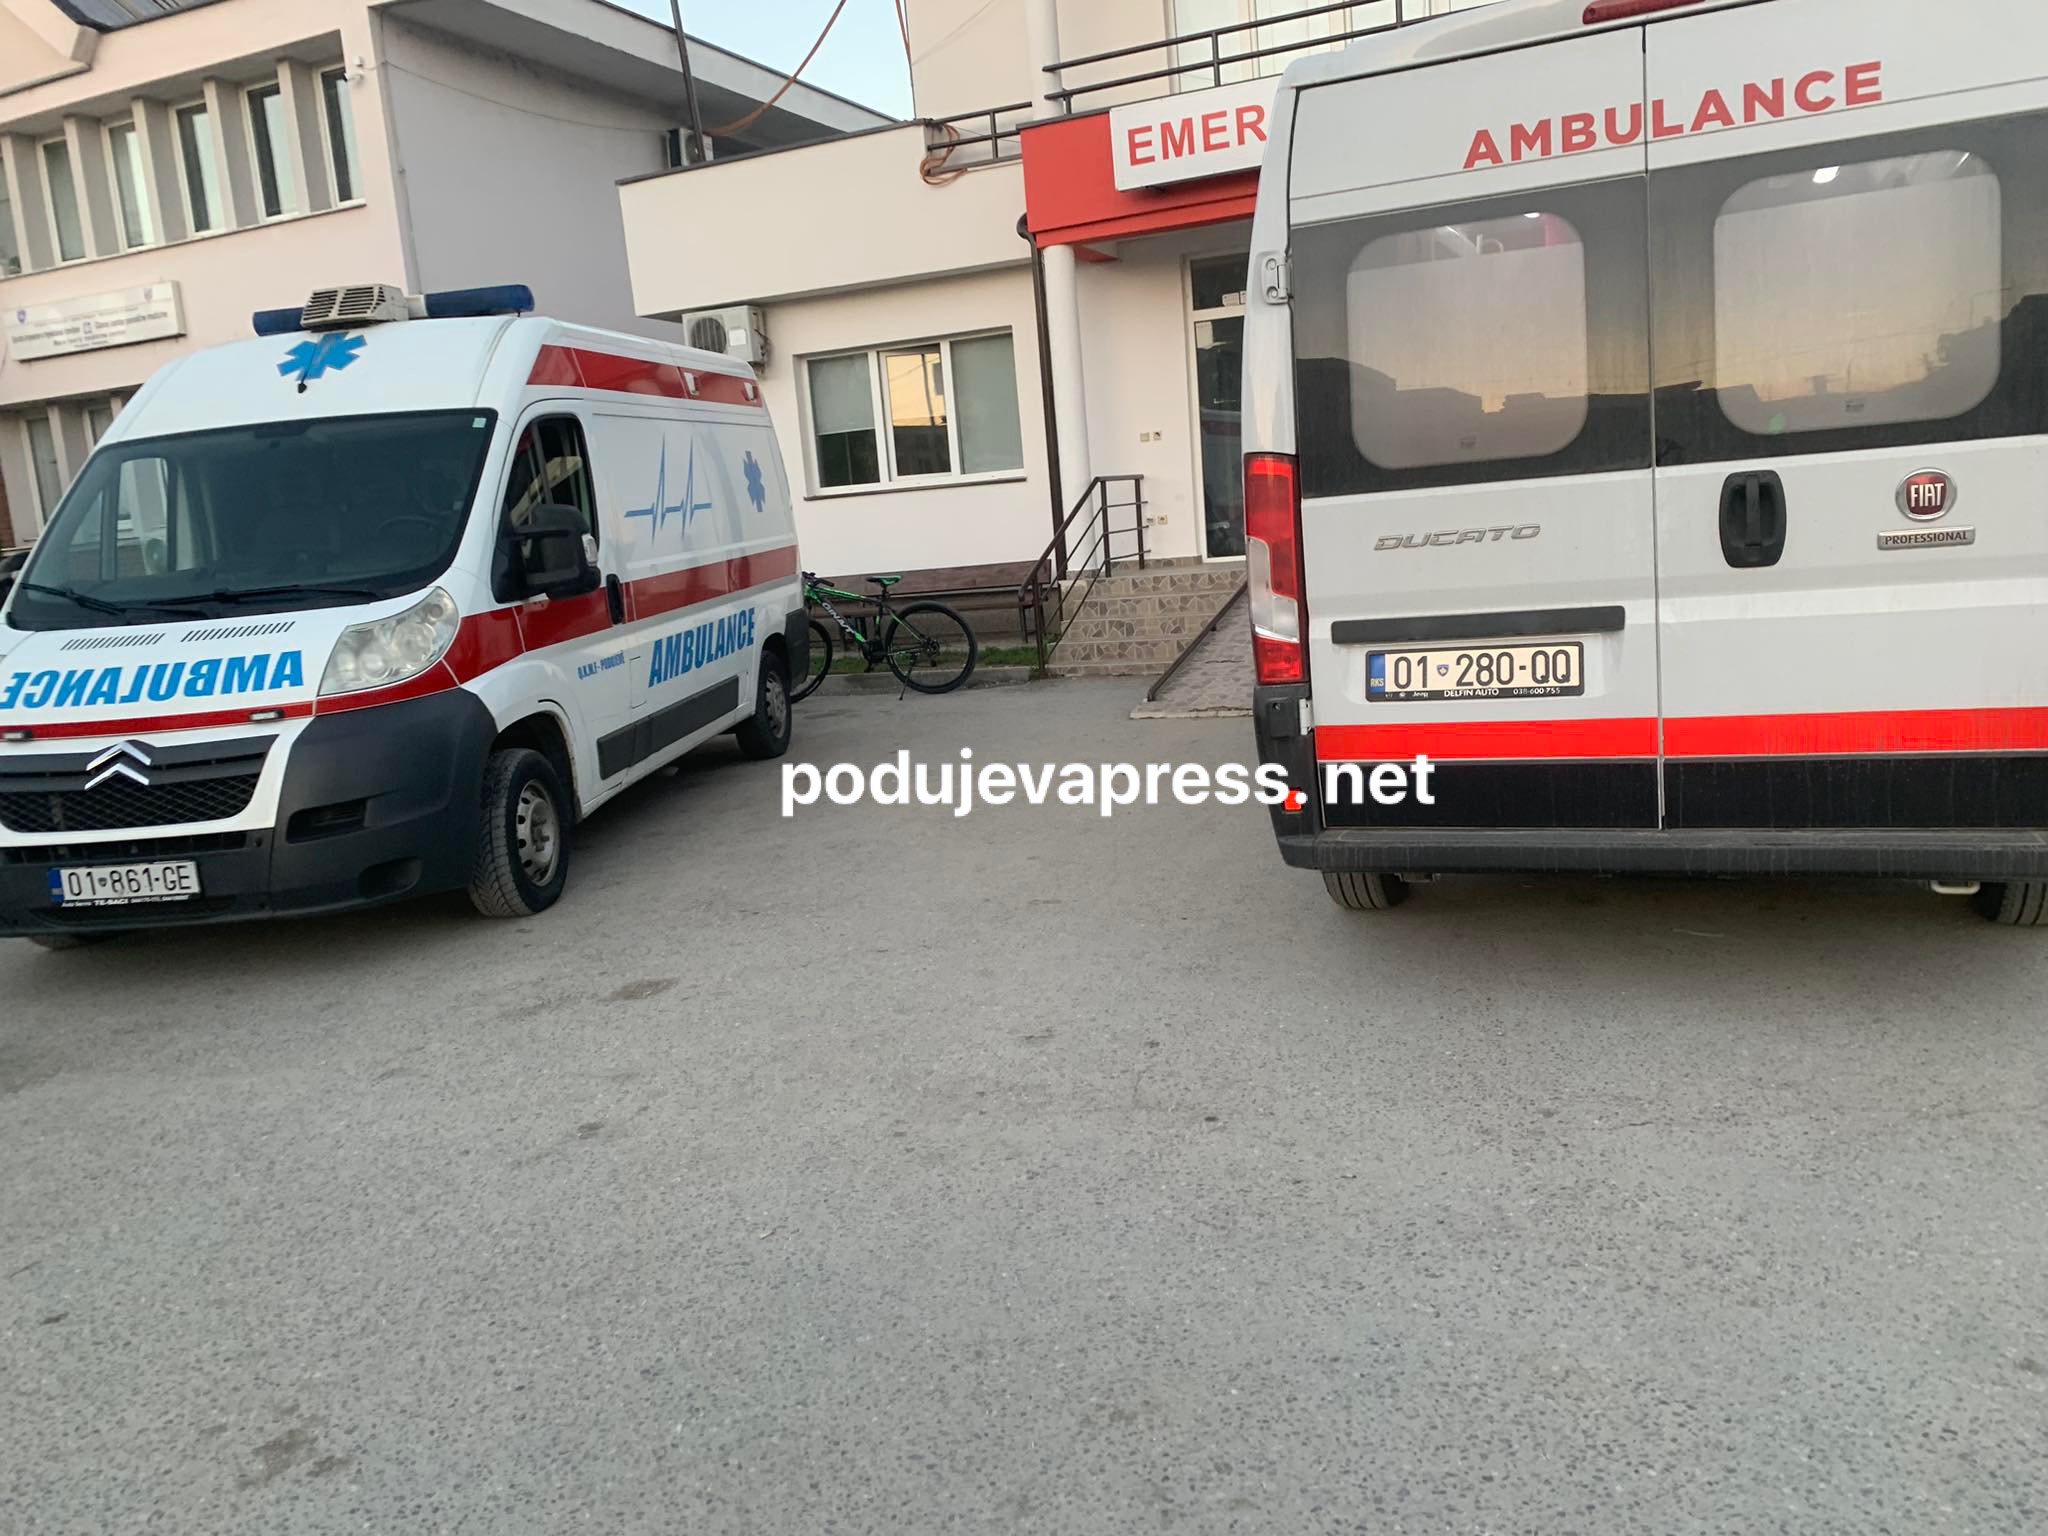  Tre të plagosur nga Podujeva në Emergjencë, drejtori tregon për gjendjen e tyre